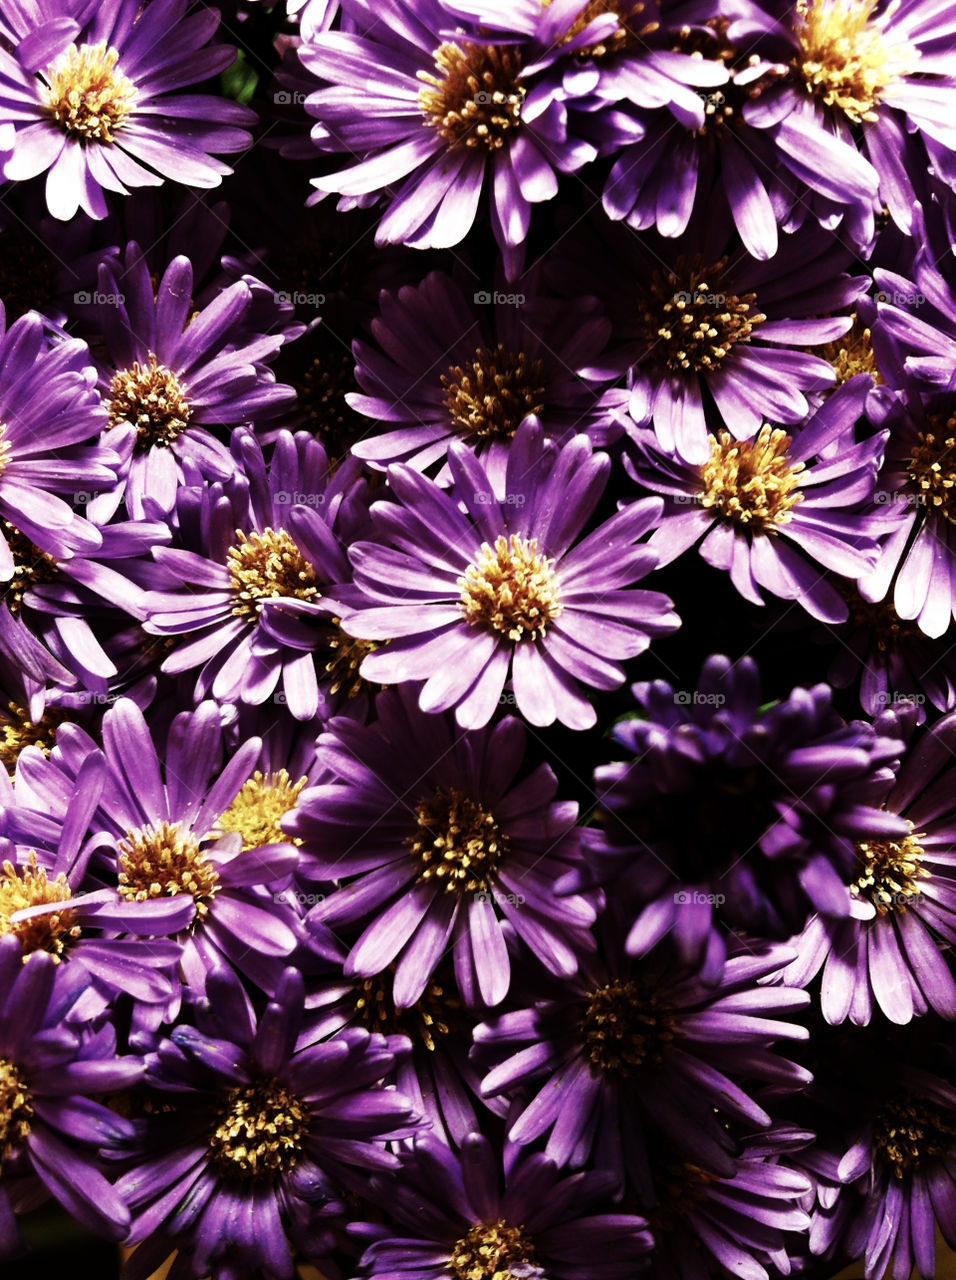 flowers plants purple art by chrisj